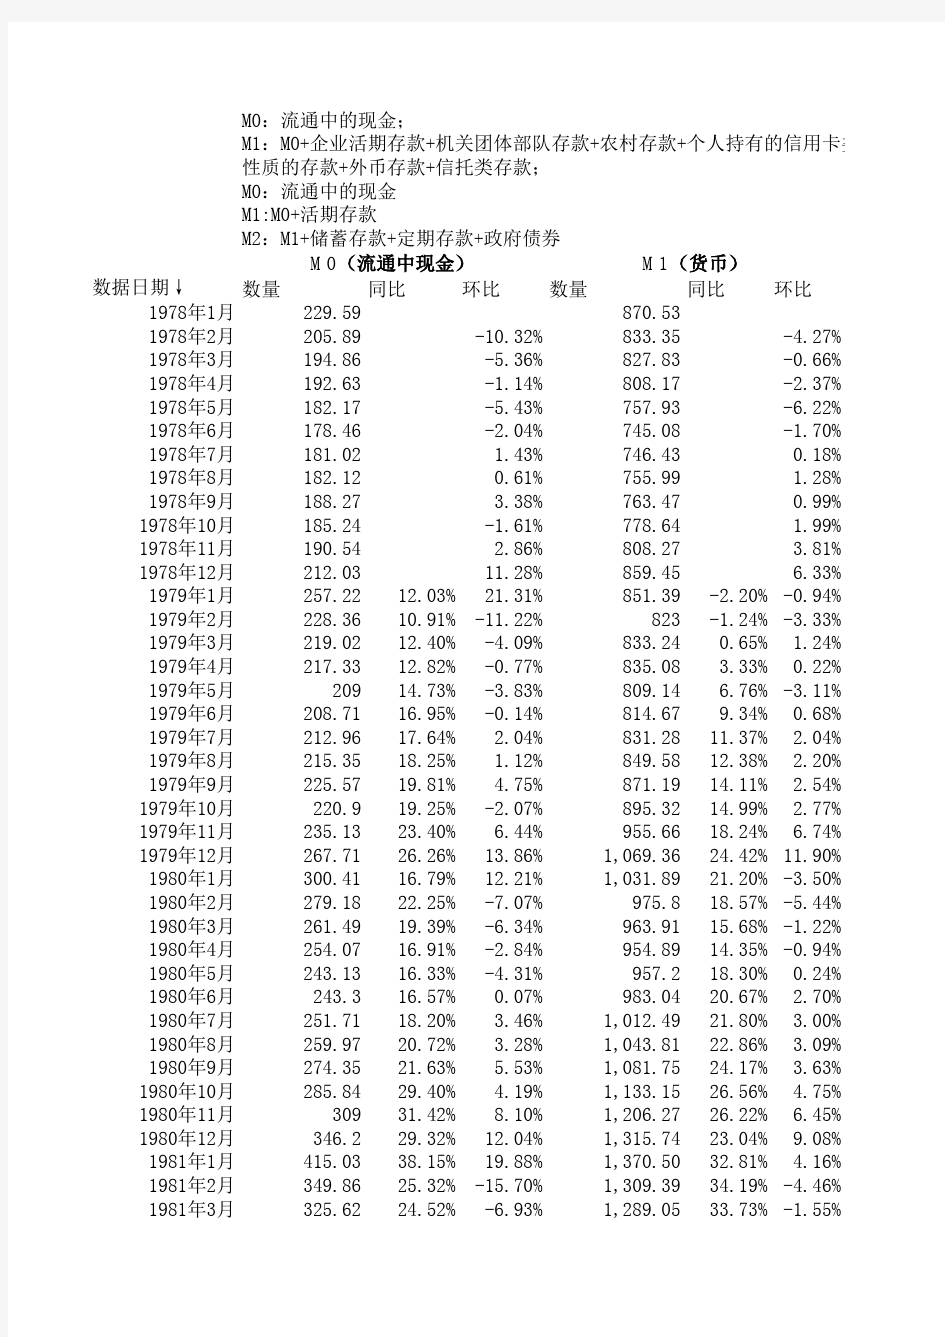 中国历年货币供应量(M0_M1_M2)